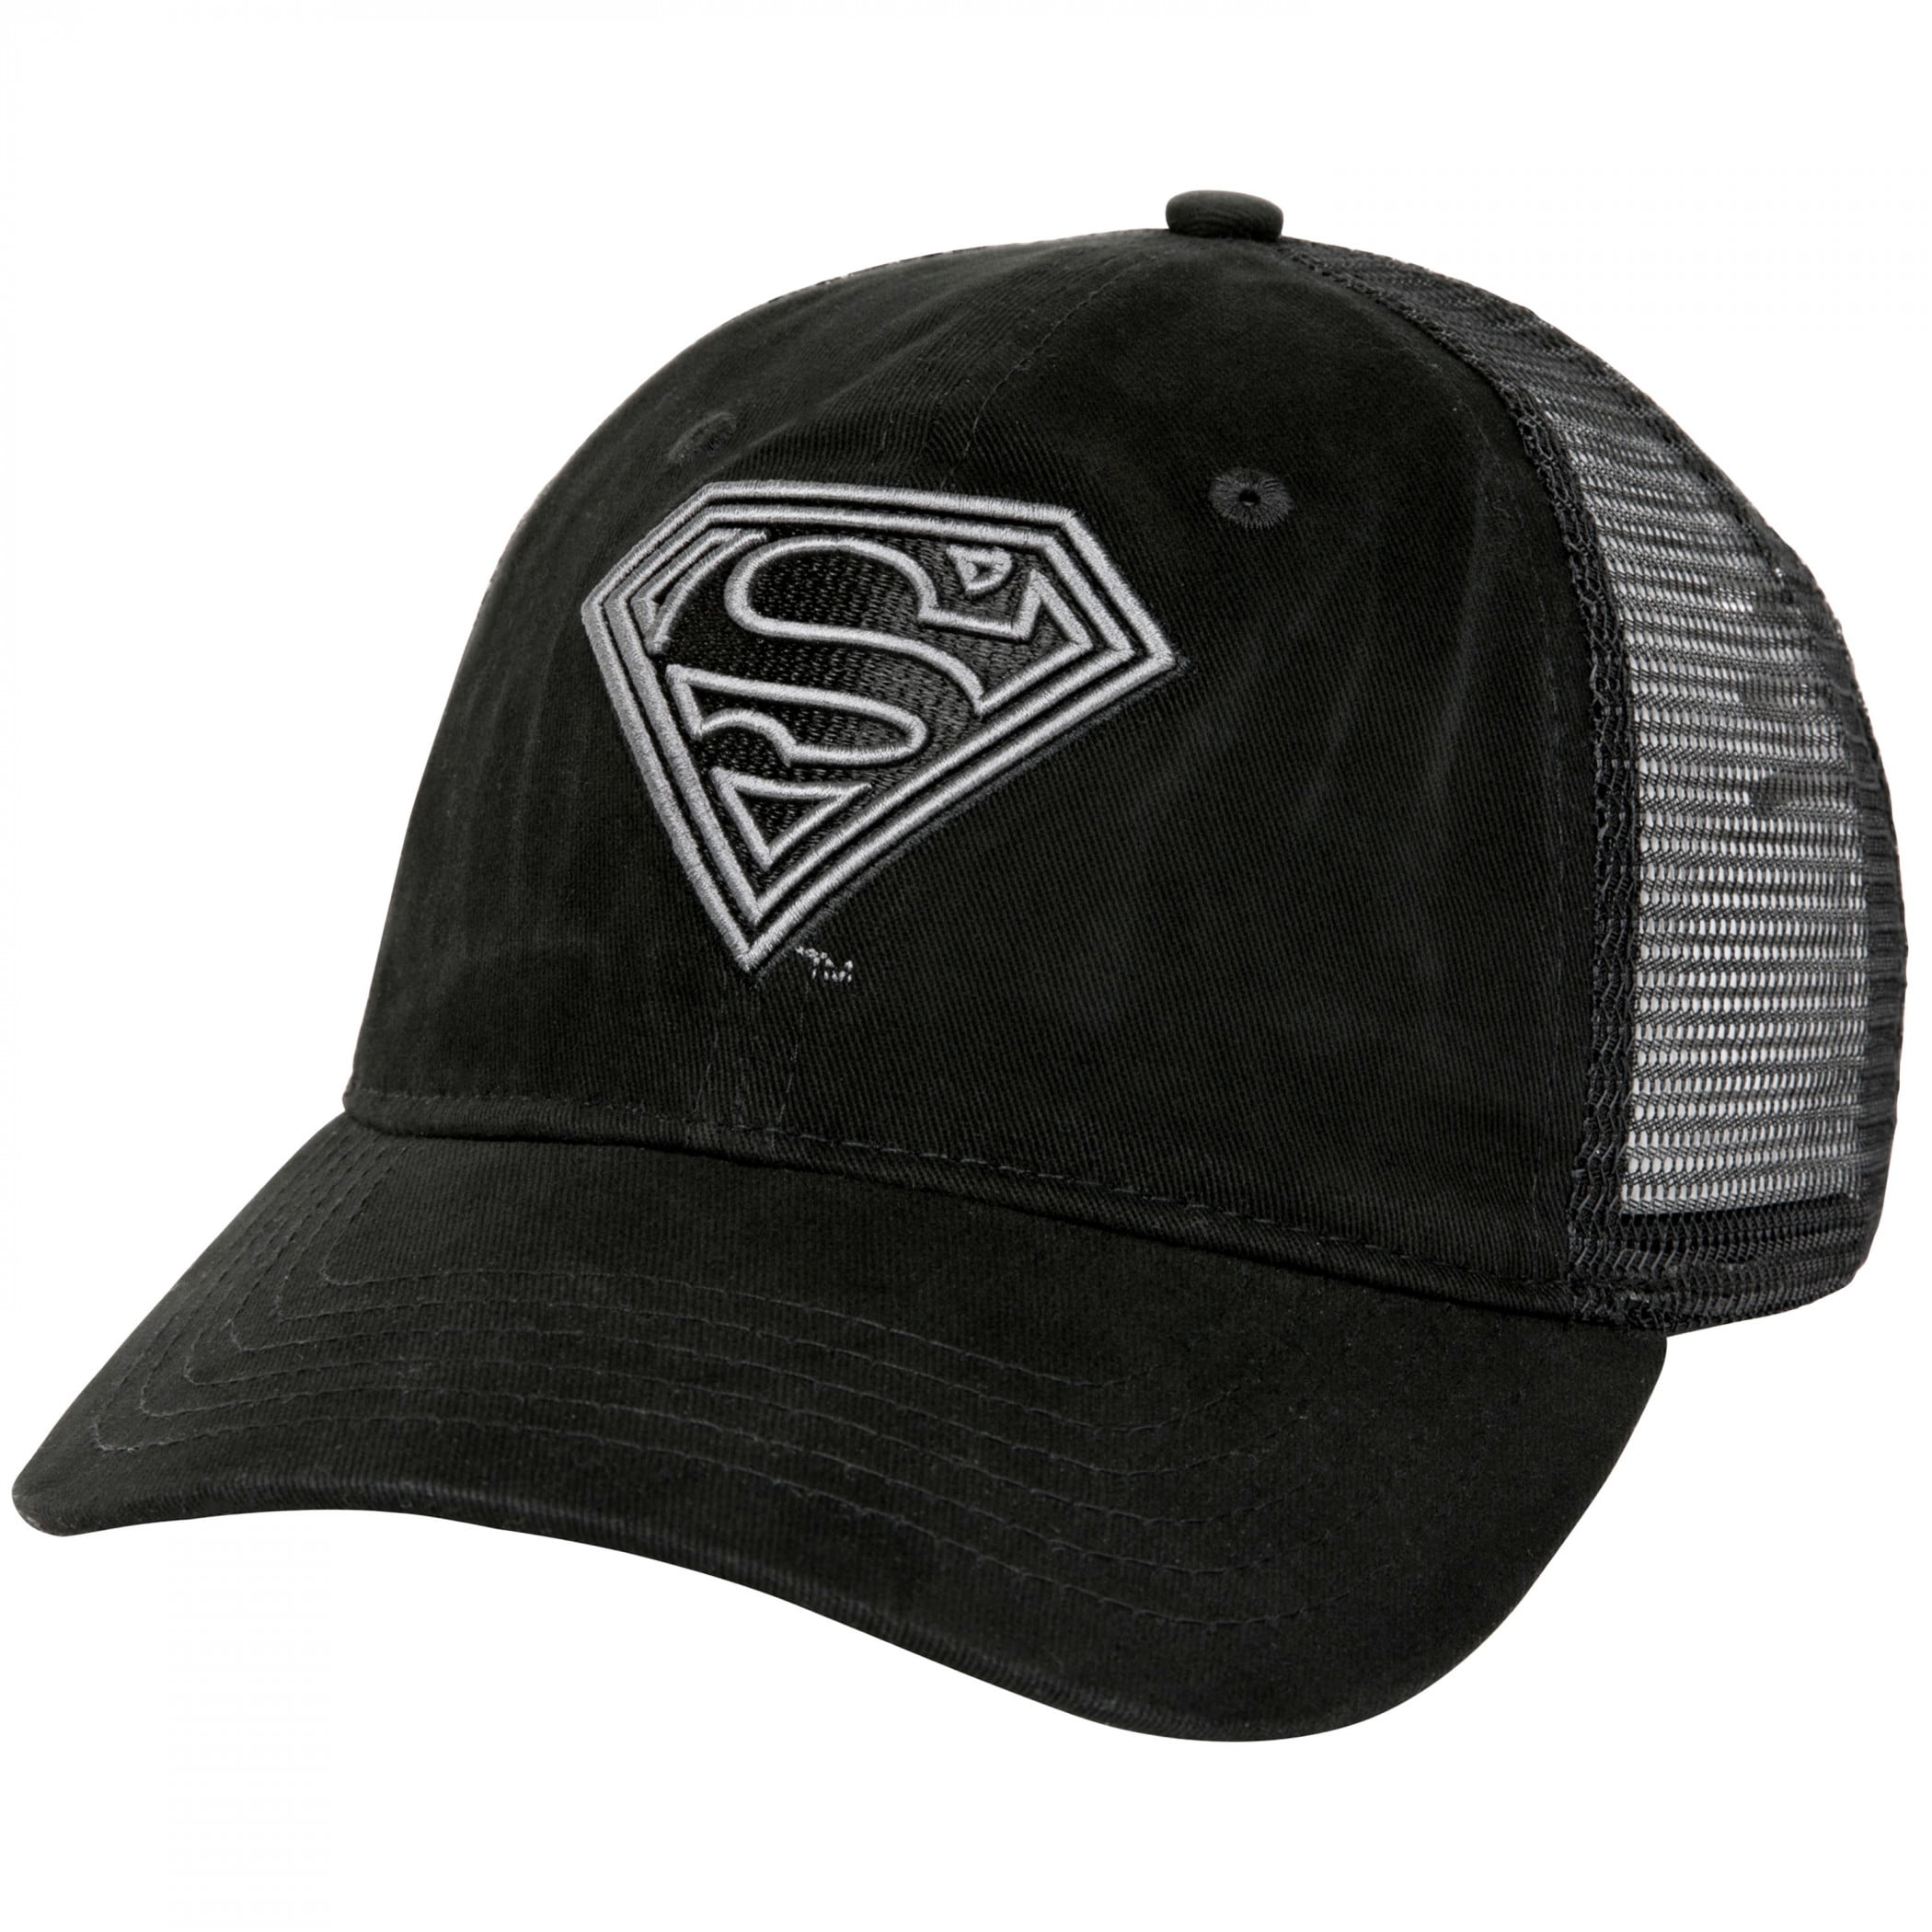 Superman Hats & Headwear